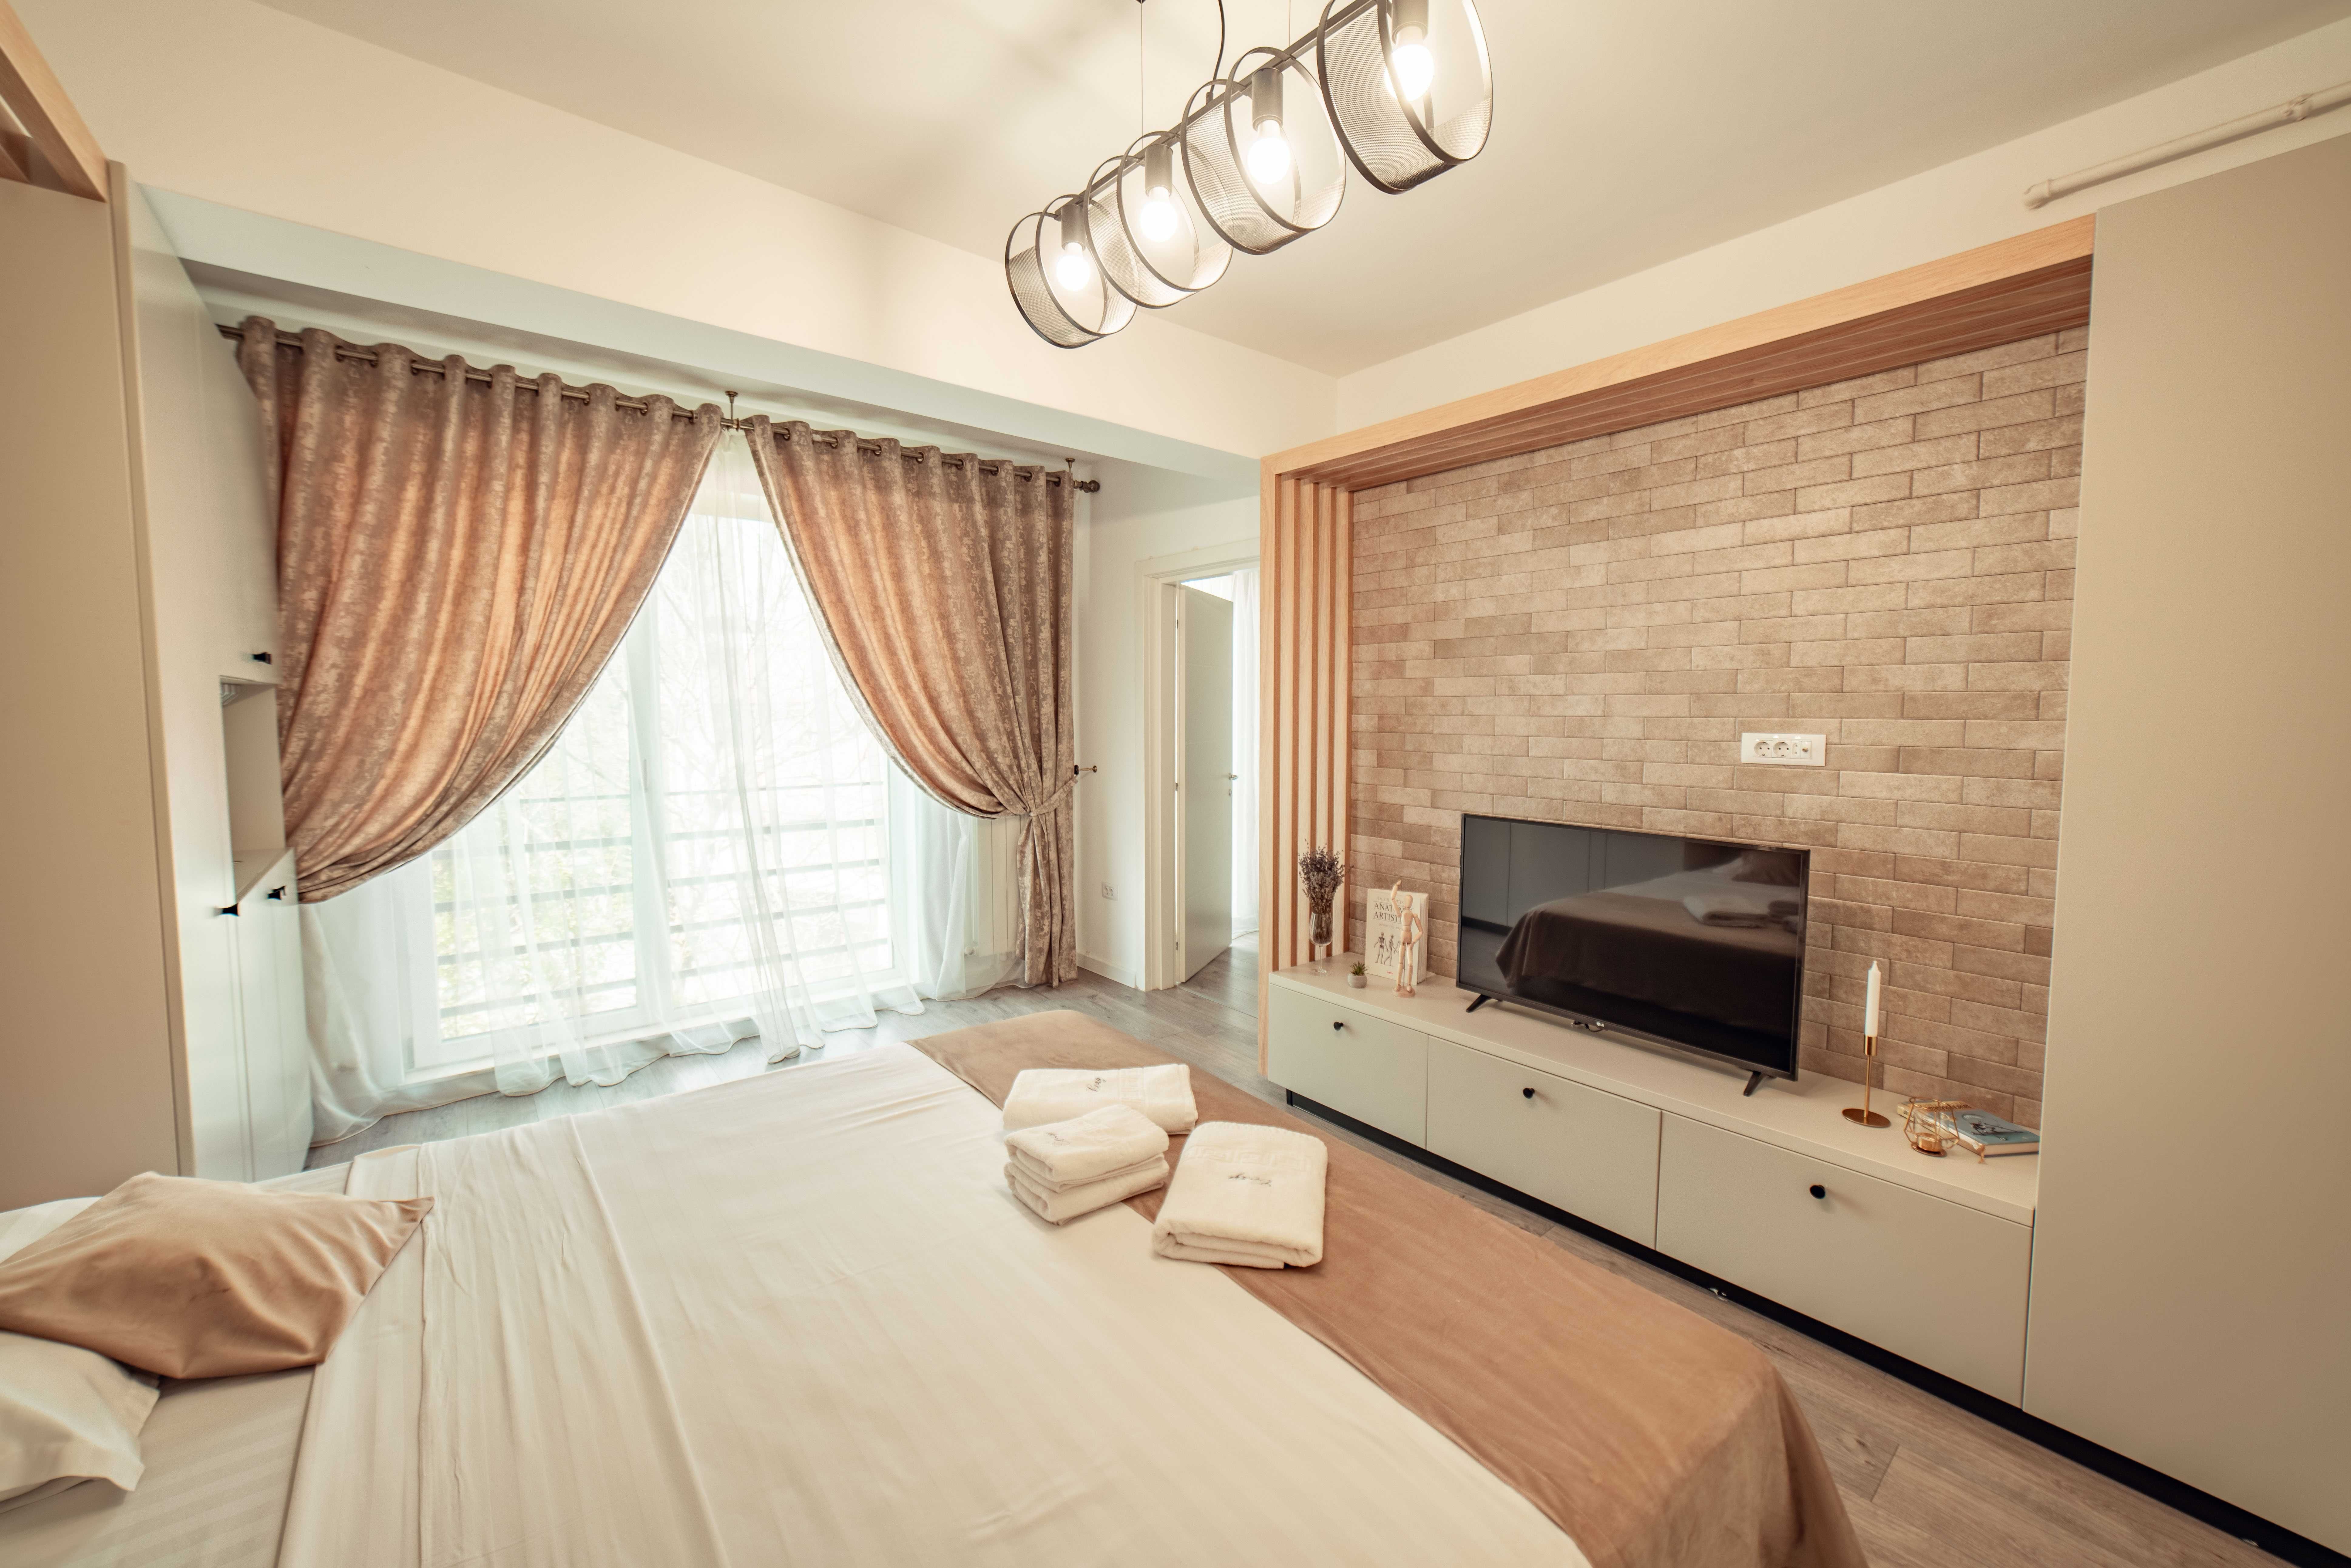 Cozy Apartments Regim Hotelier Brasov - Iasi - Suceava - Targu Mures